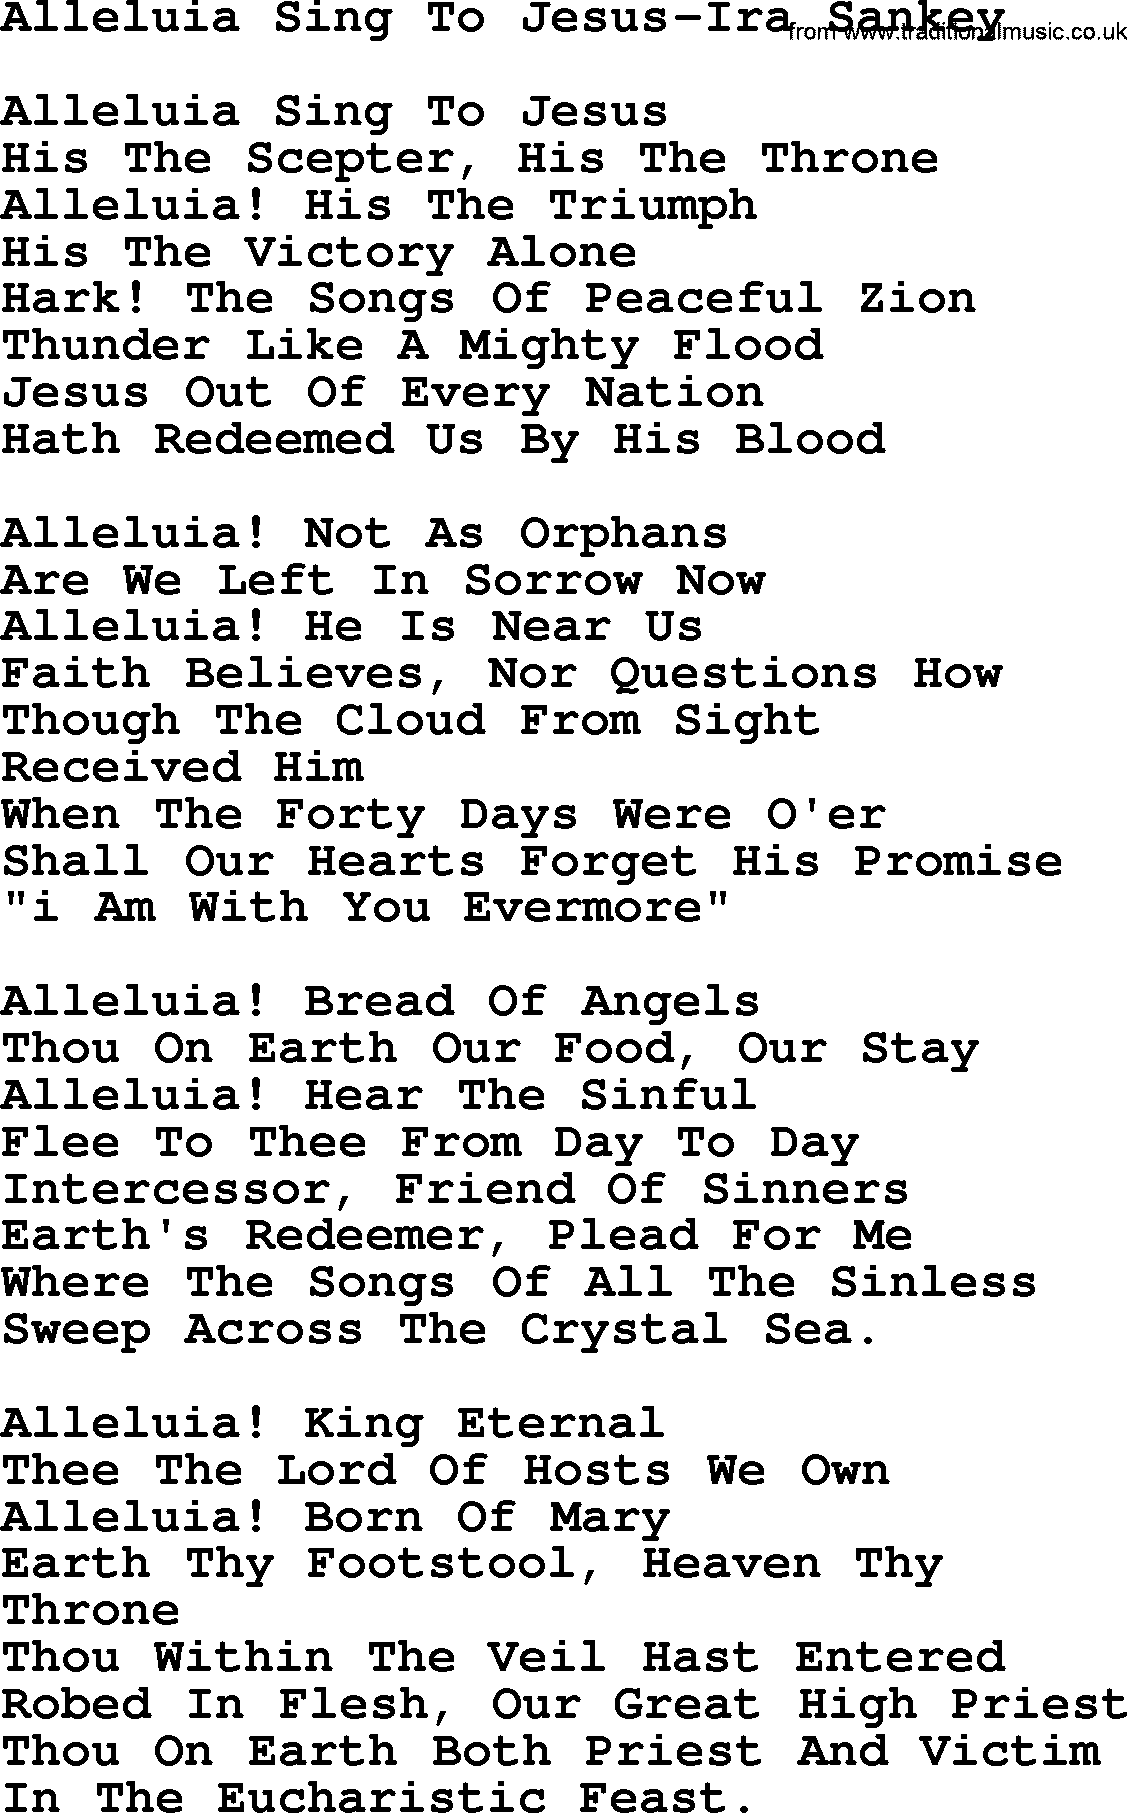 Ira Sankey hymn: Alleluia Sing To Jesus-Ira Sankey, lyrics